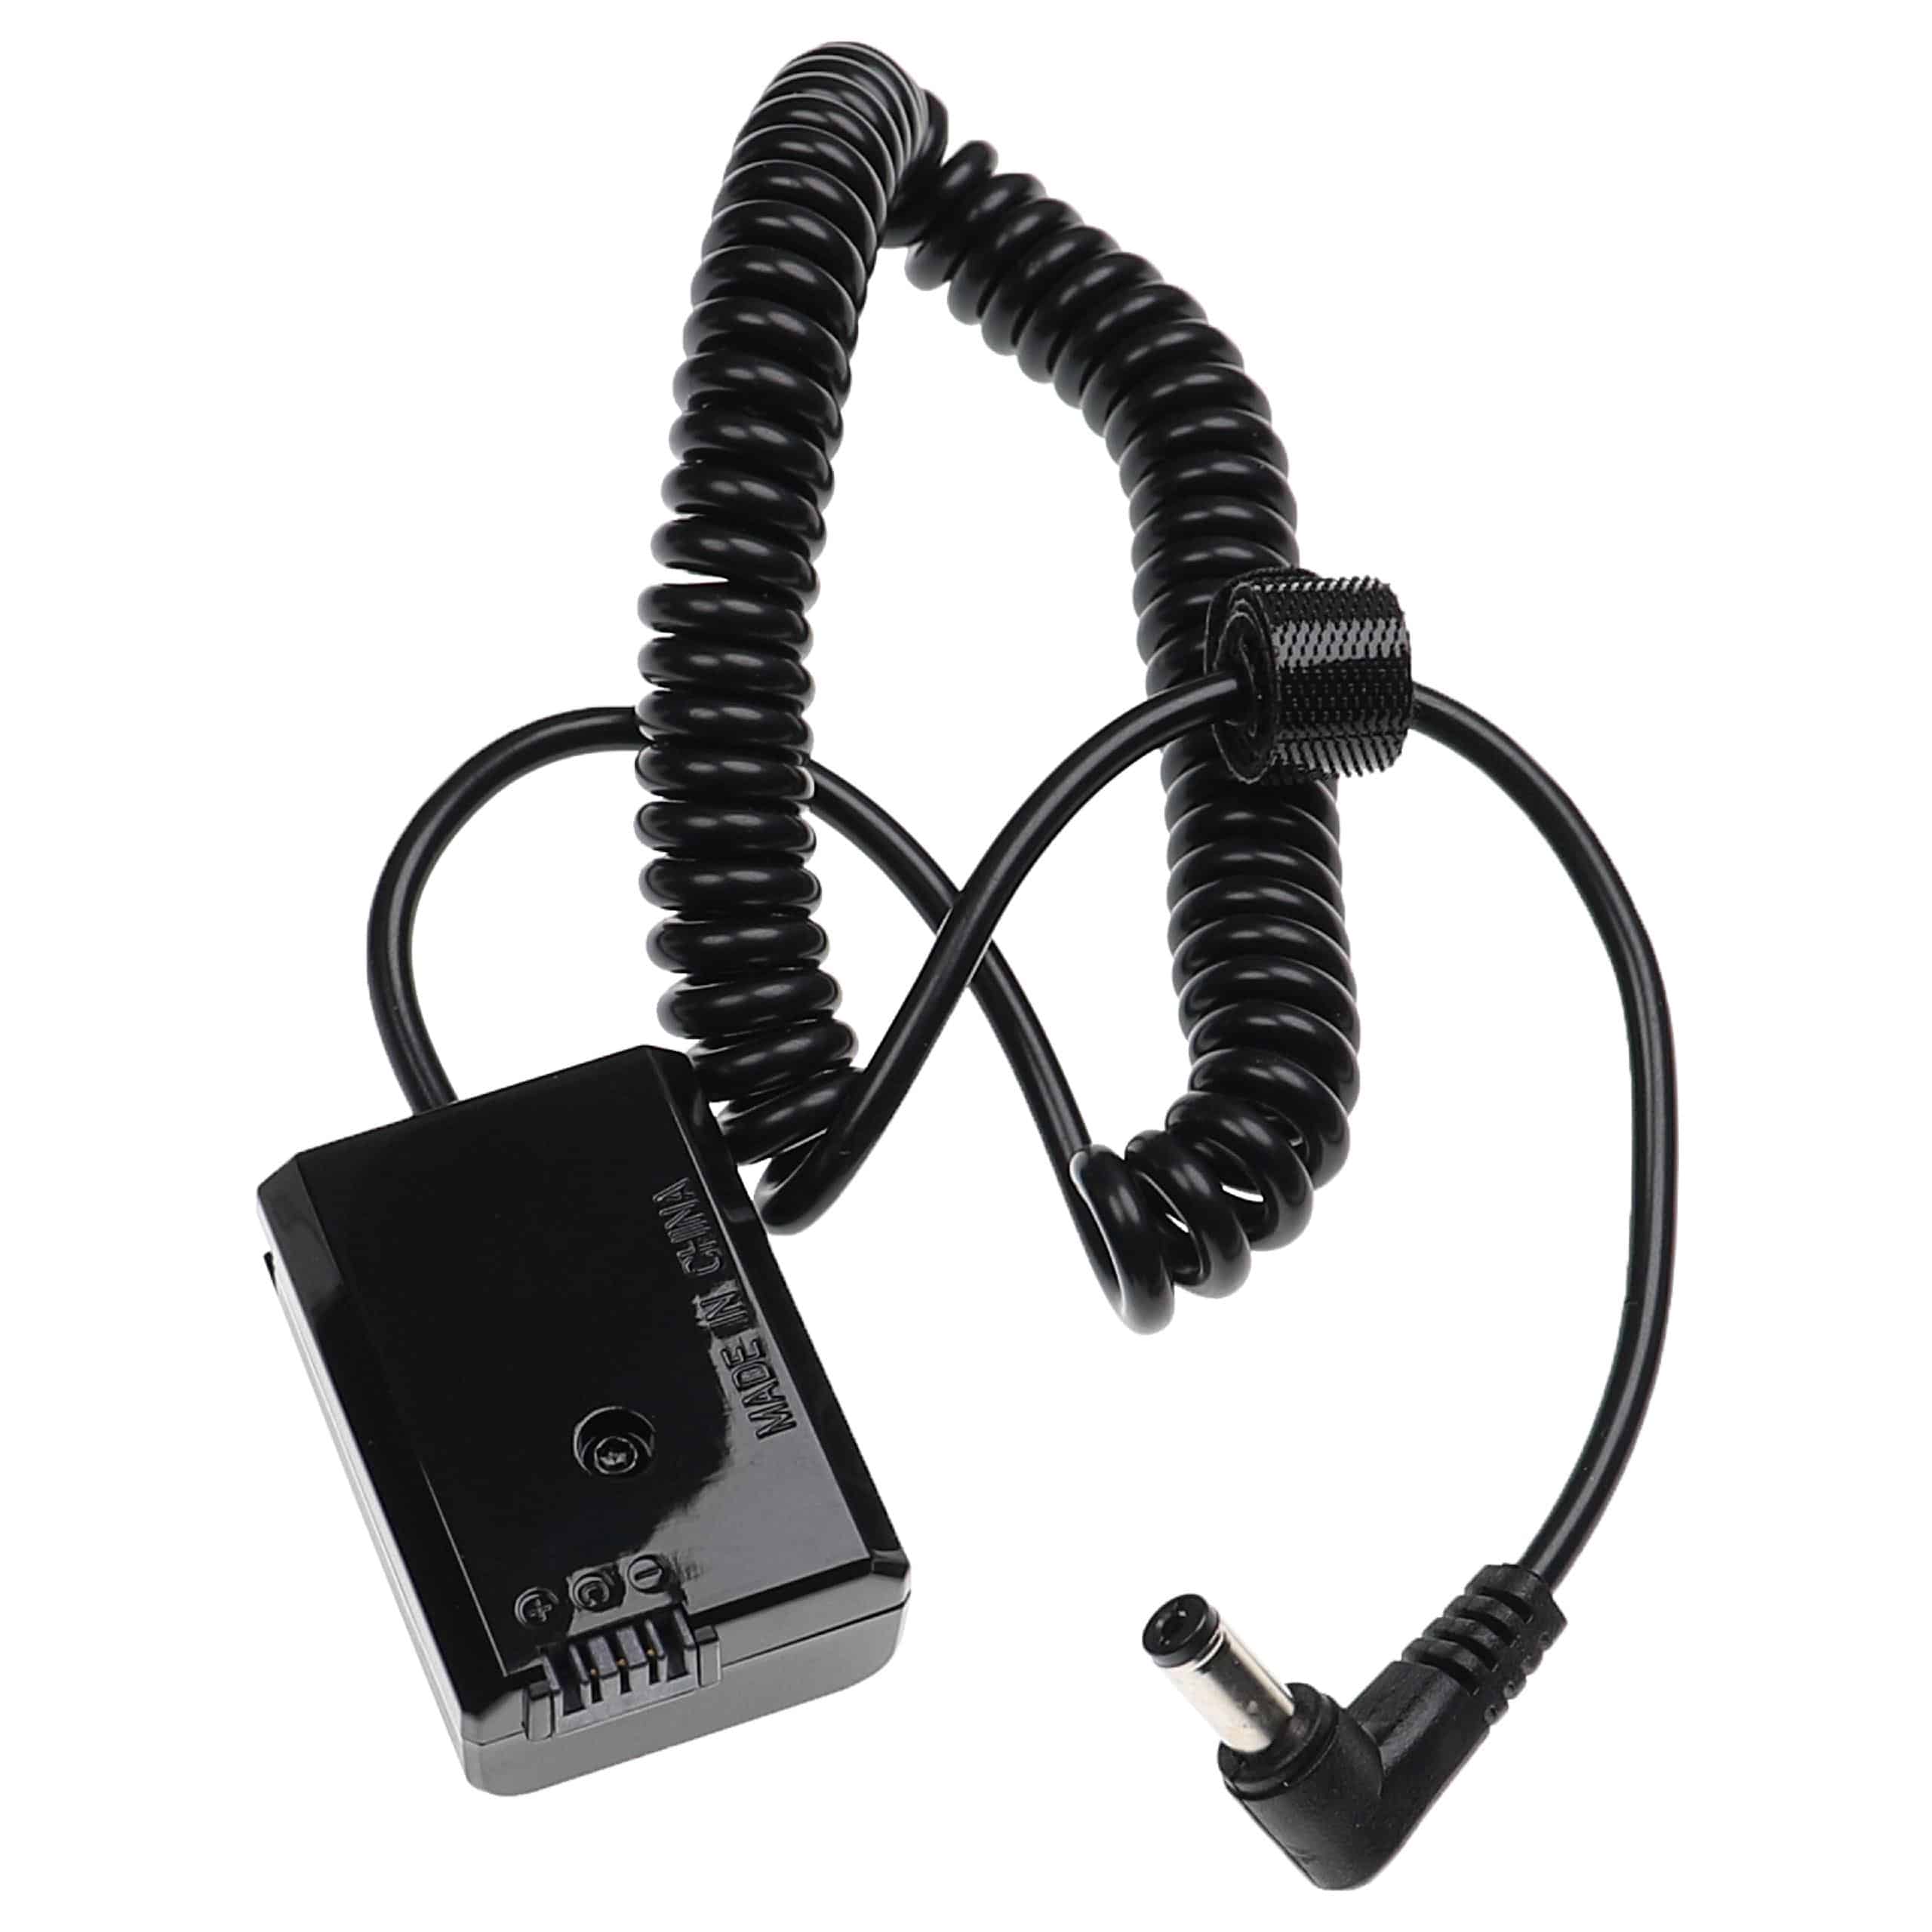 Łącznik DC adapter do aparatu Sony zamiennik Sony NP-FW50 - dł. 120 cm, kabel spiralny